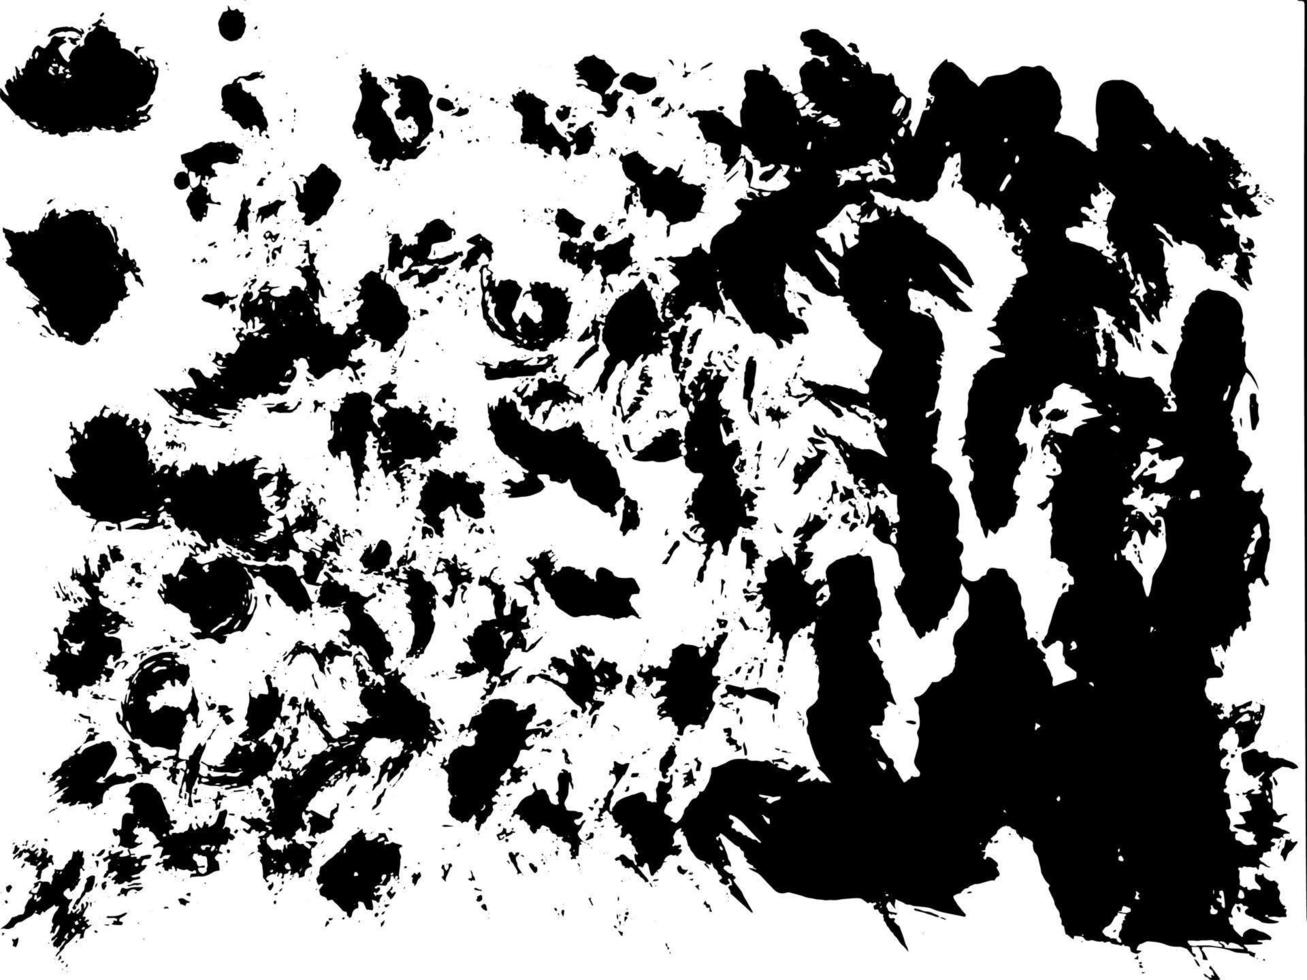 grunge zwart-wit stedelijke textuur sjabloon. donkere vuile stof overlay nood achtergrond. creëer eenvoudig een abstract gestippeld, gekrast, vintage effect met ruis en graan vector